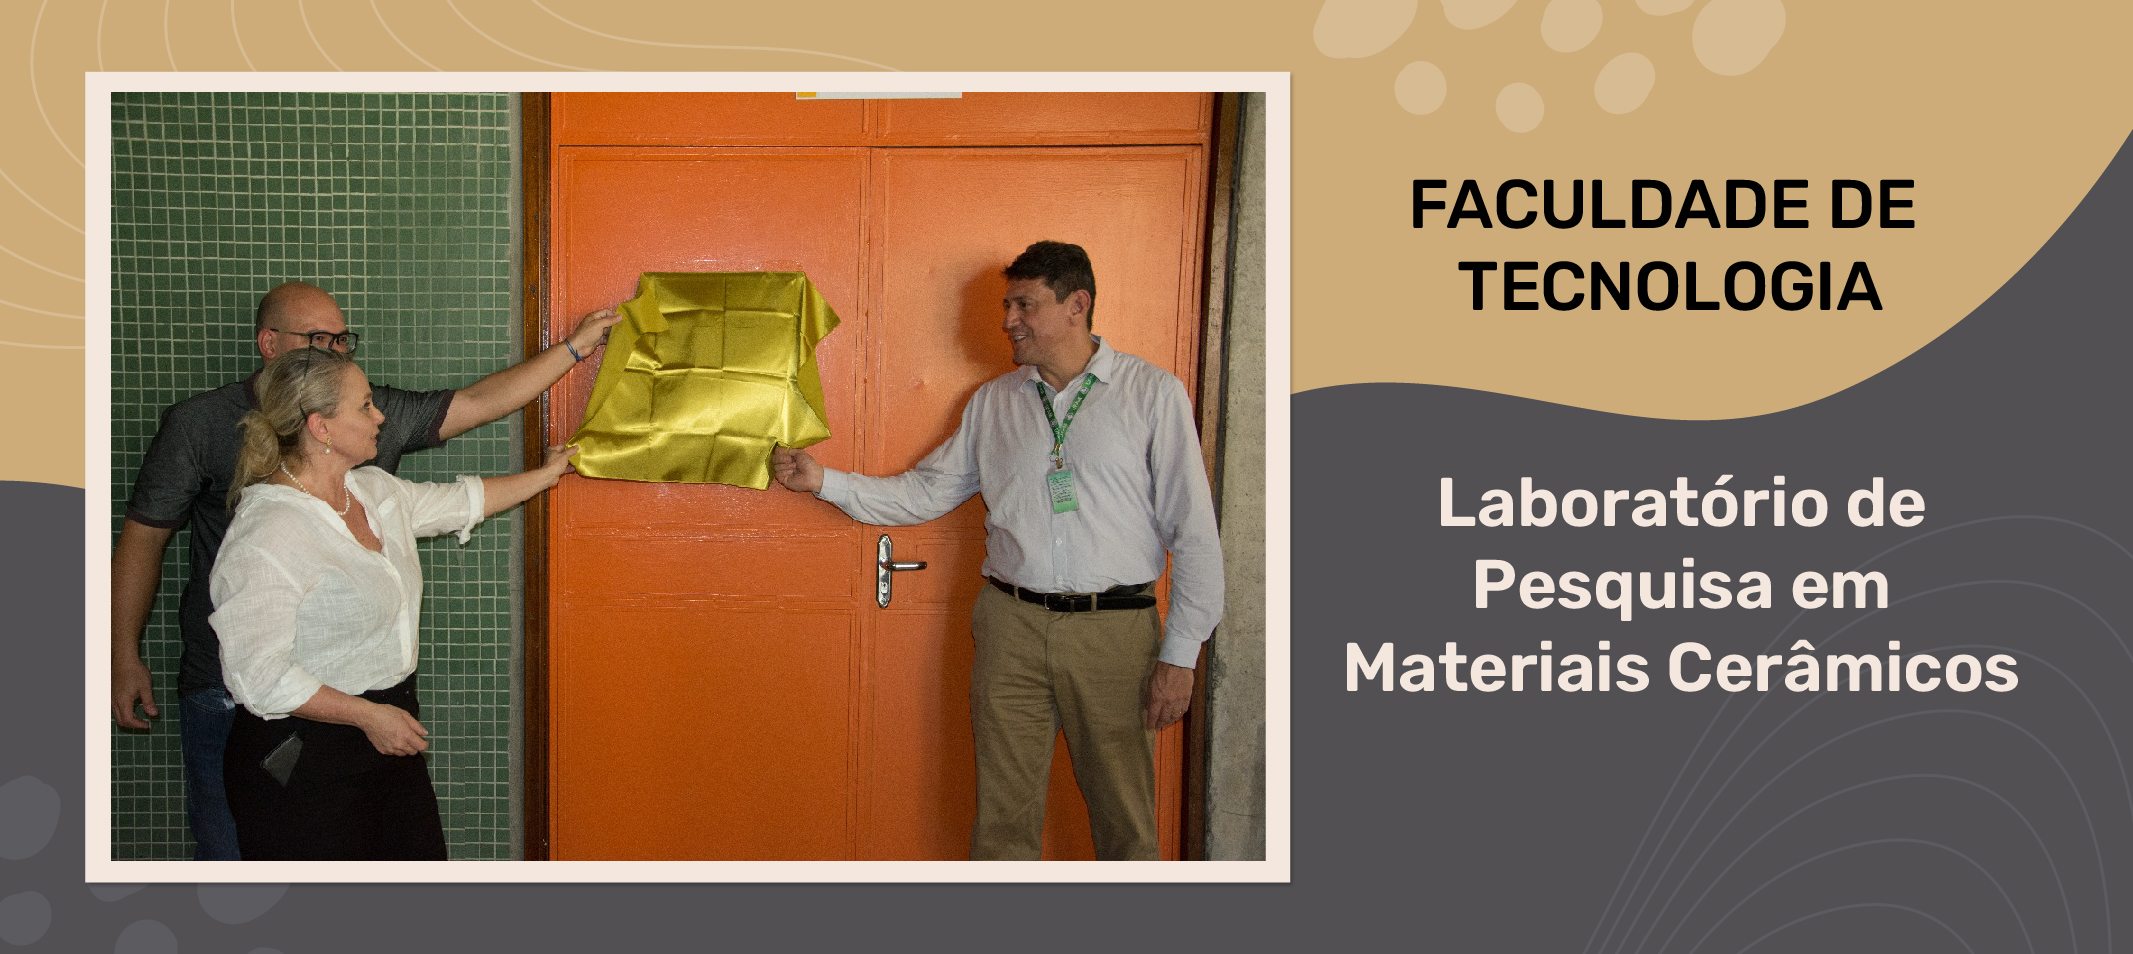 Ufam inaugura Laboratório de Pesquisa em Materiais Cerâmicos da Faculdade de Tecnologia (FT)